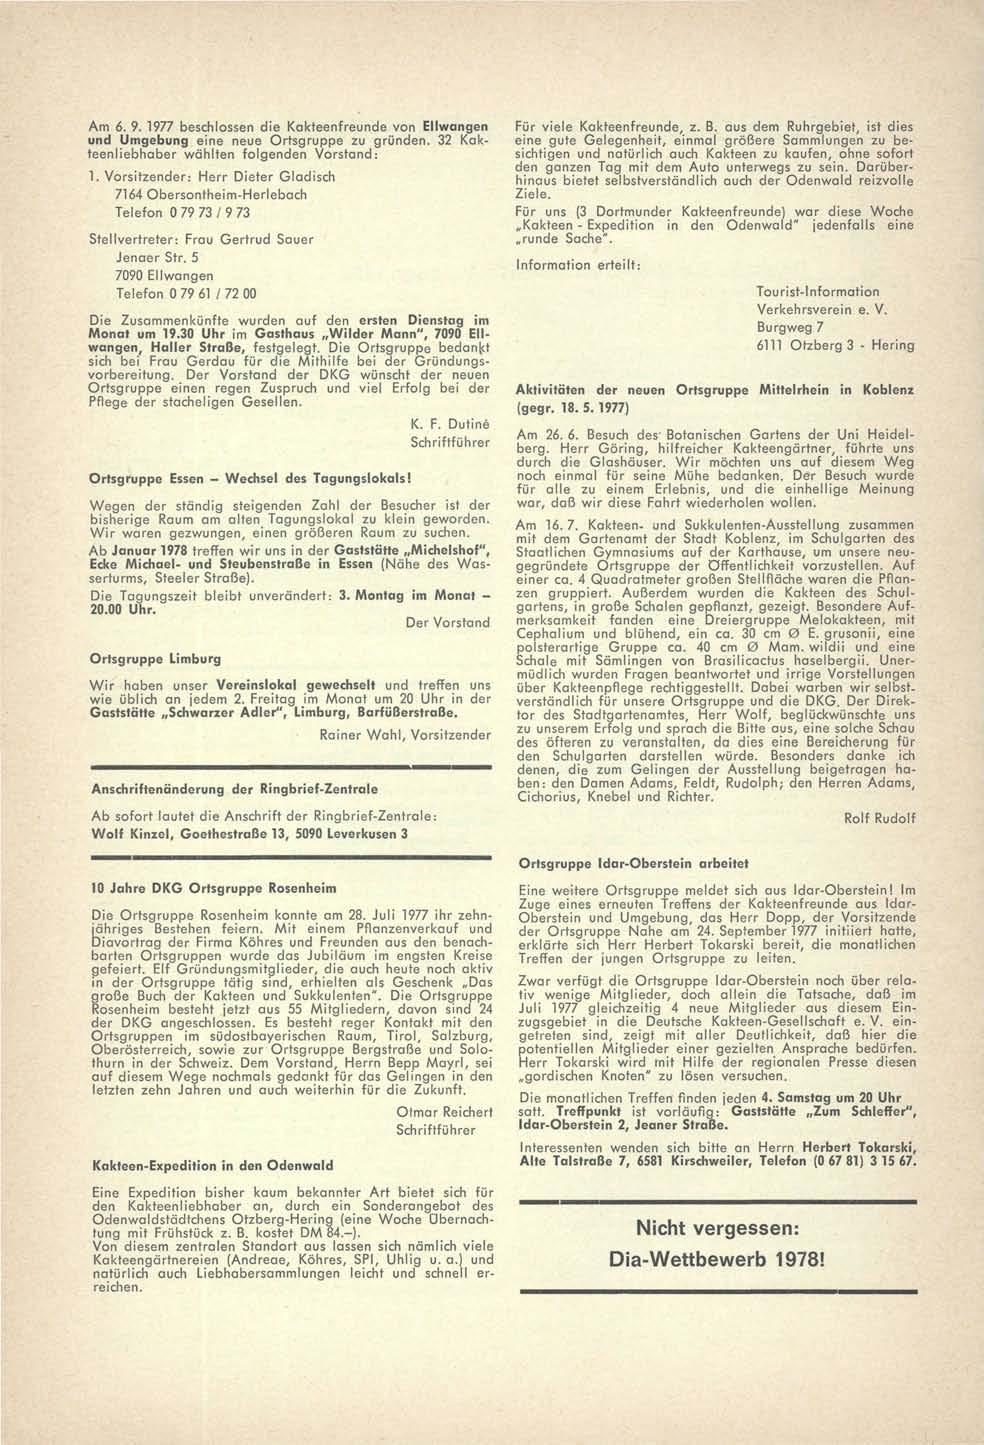 Am 6. 9.1977 beschlossen die Kakteenfreunde von Ellwangen und Umgebung eine neue Ortsgruppe zu gründen. 32 Kakteenliebhaber wählten folgenden Vorstand: 1.